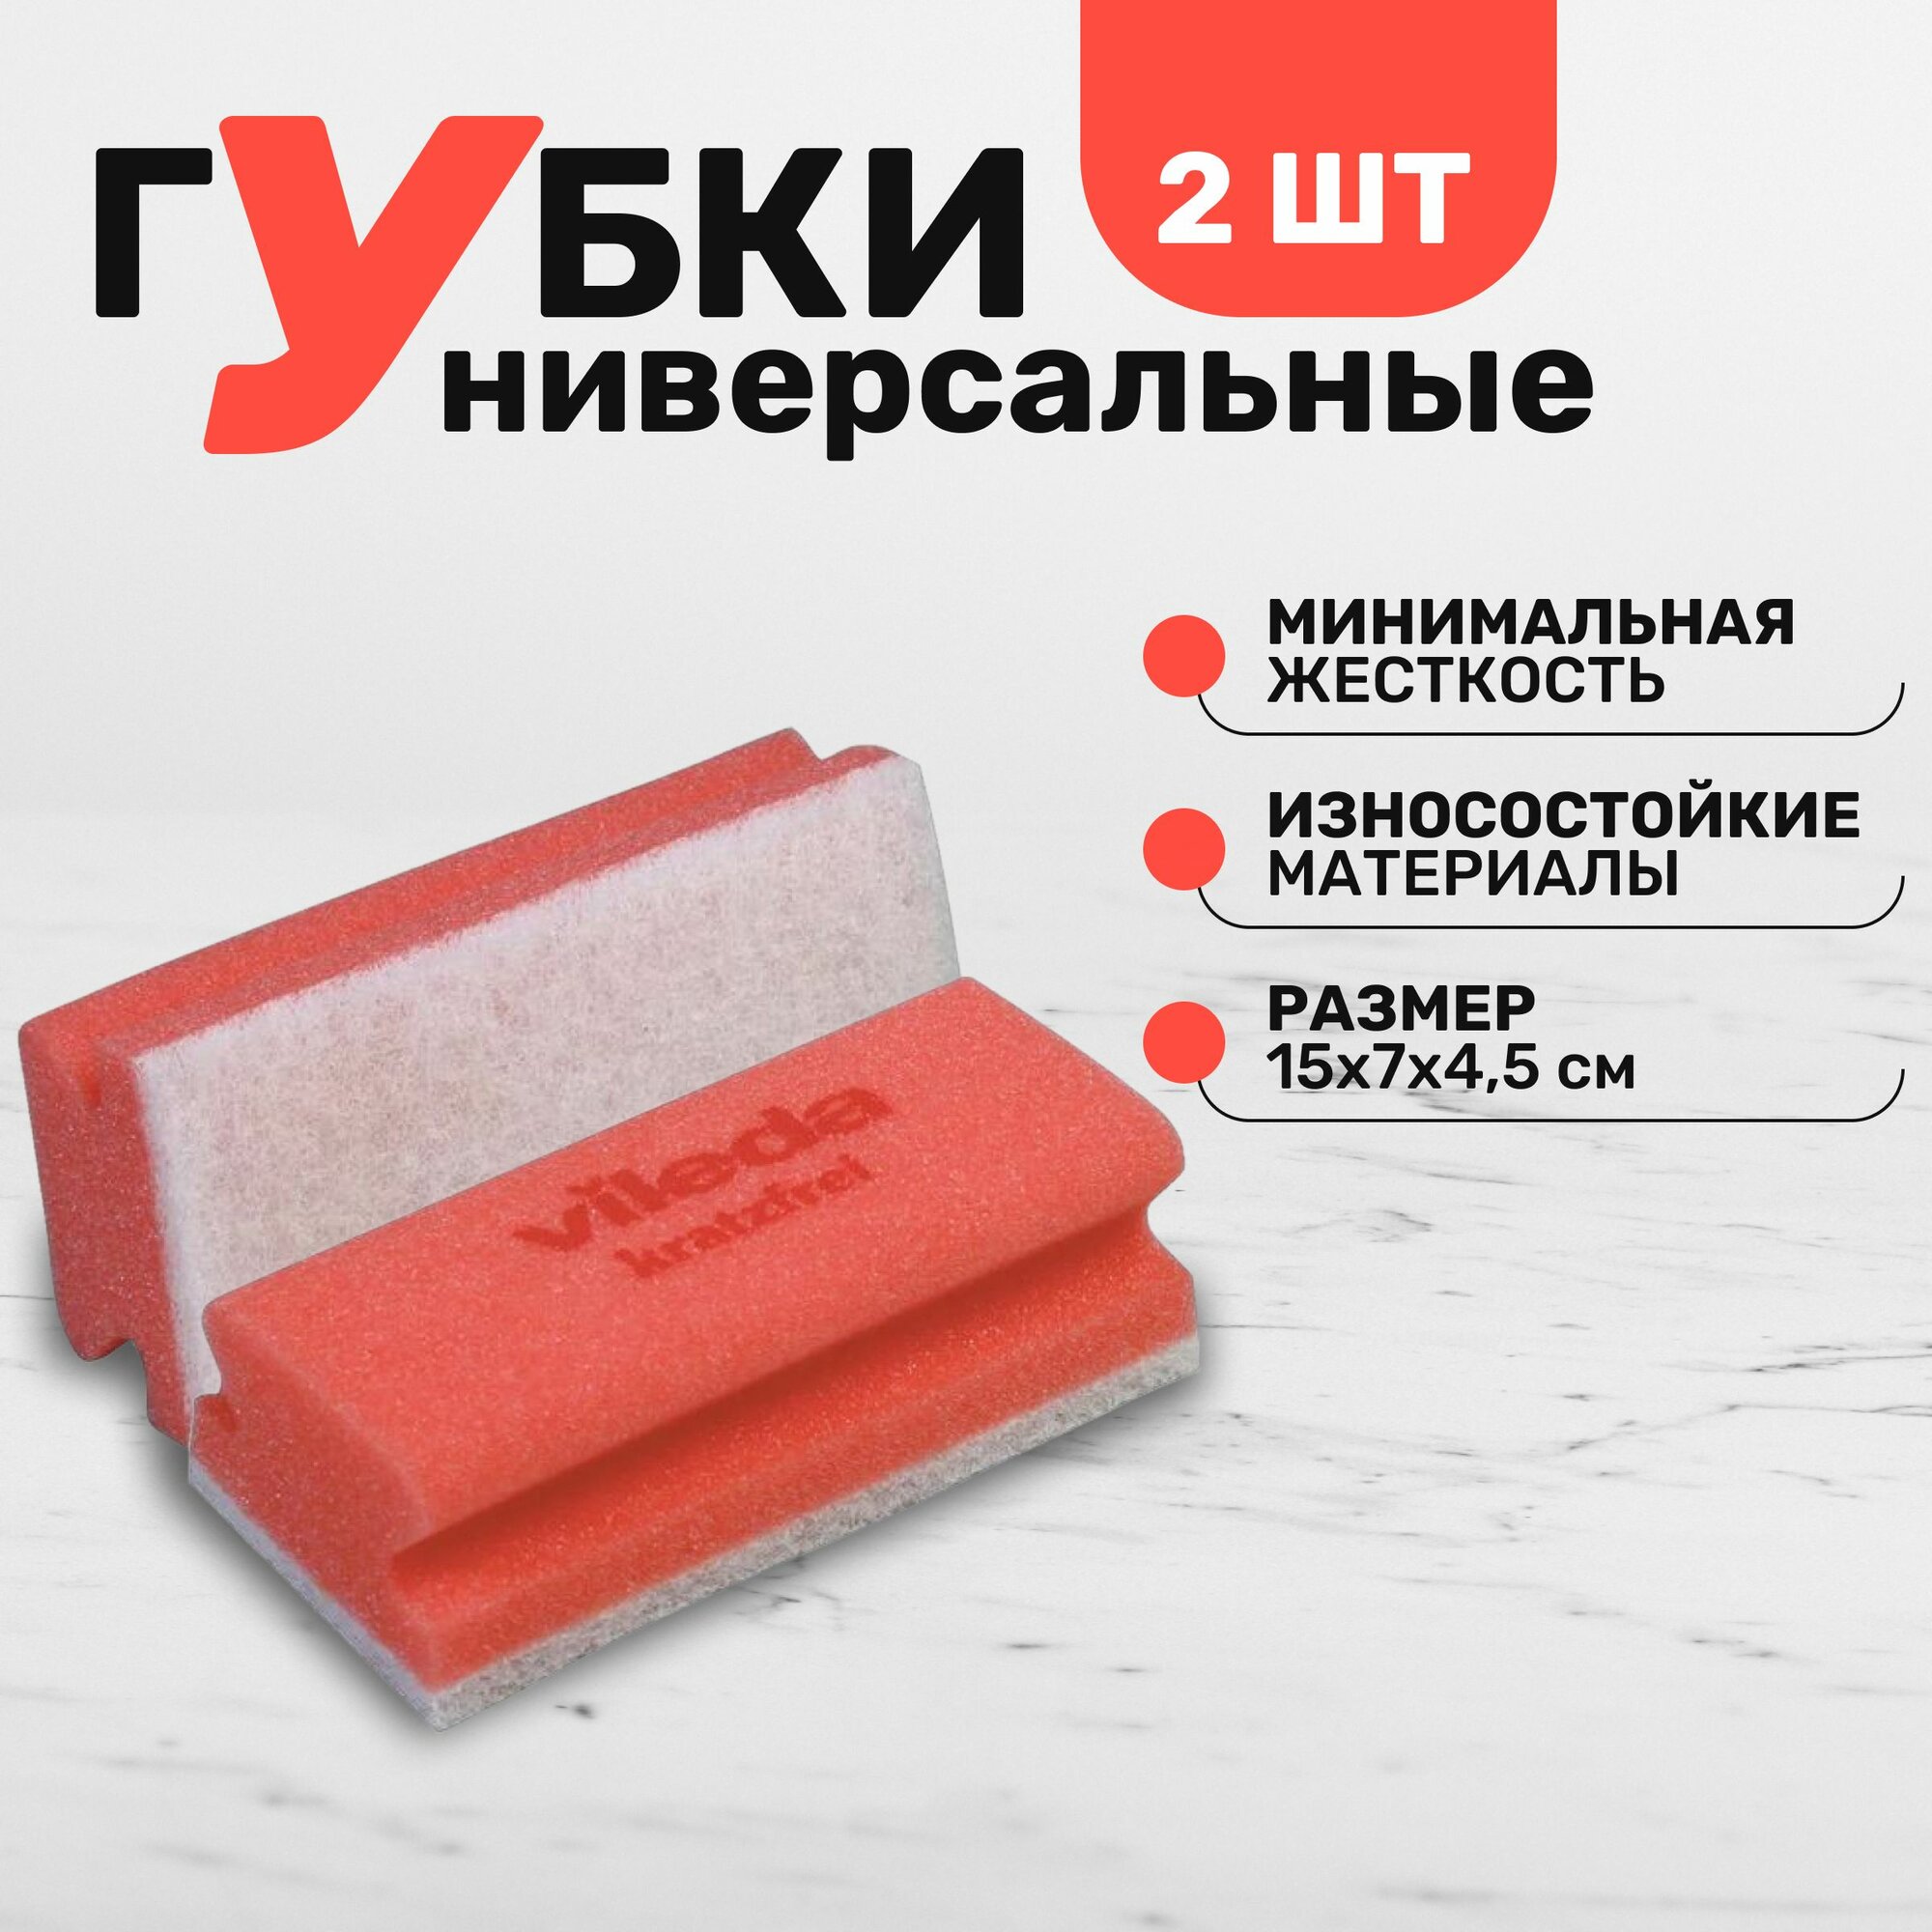 Губка для полировки и очистки мрамора, а также других деликатных поверхностей Vileda Professional минимальная жесткость, комплект 2 шт цвет красный, размер 7х15 см.